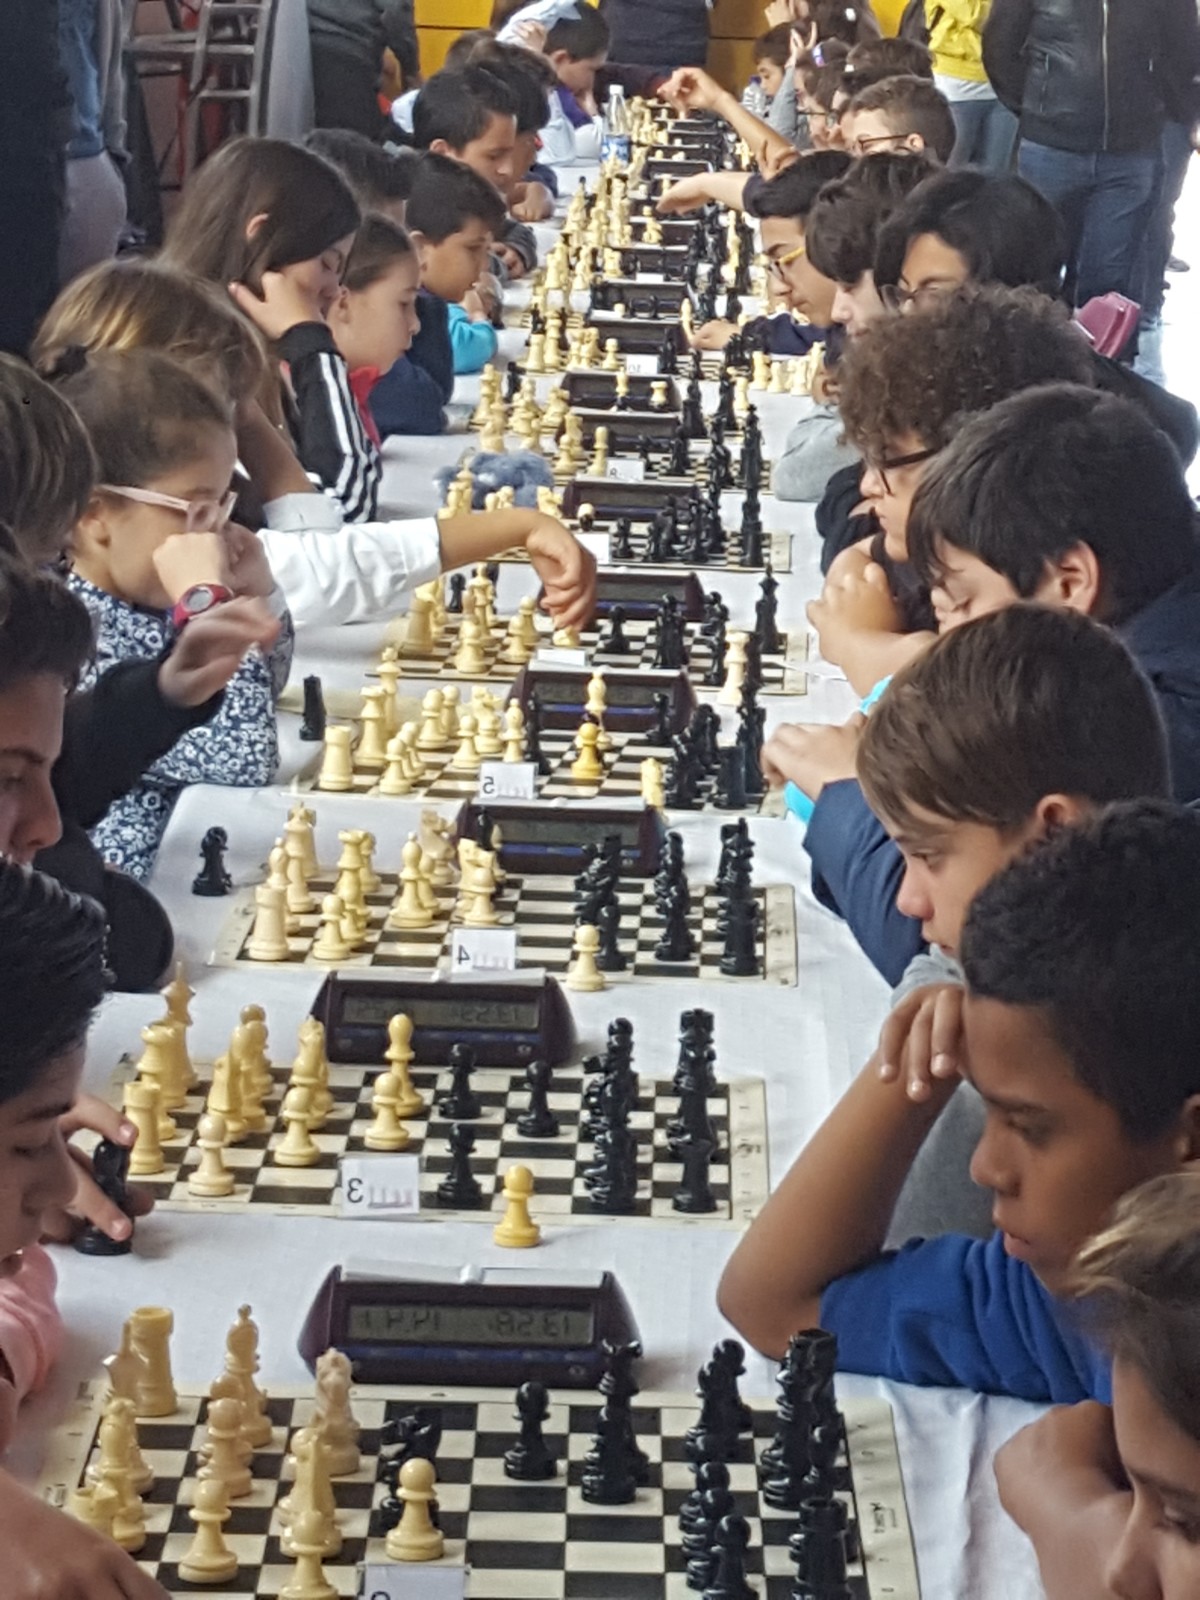 La escuela municipal de ajedrez obtiene excelentes resultados en los Juegos Escolares del Cabildo